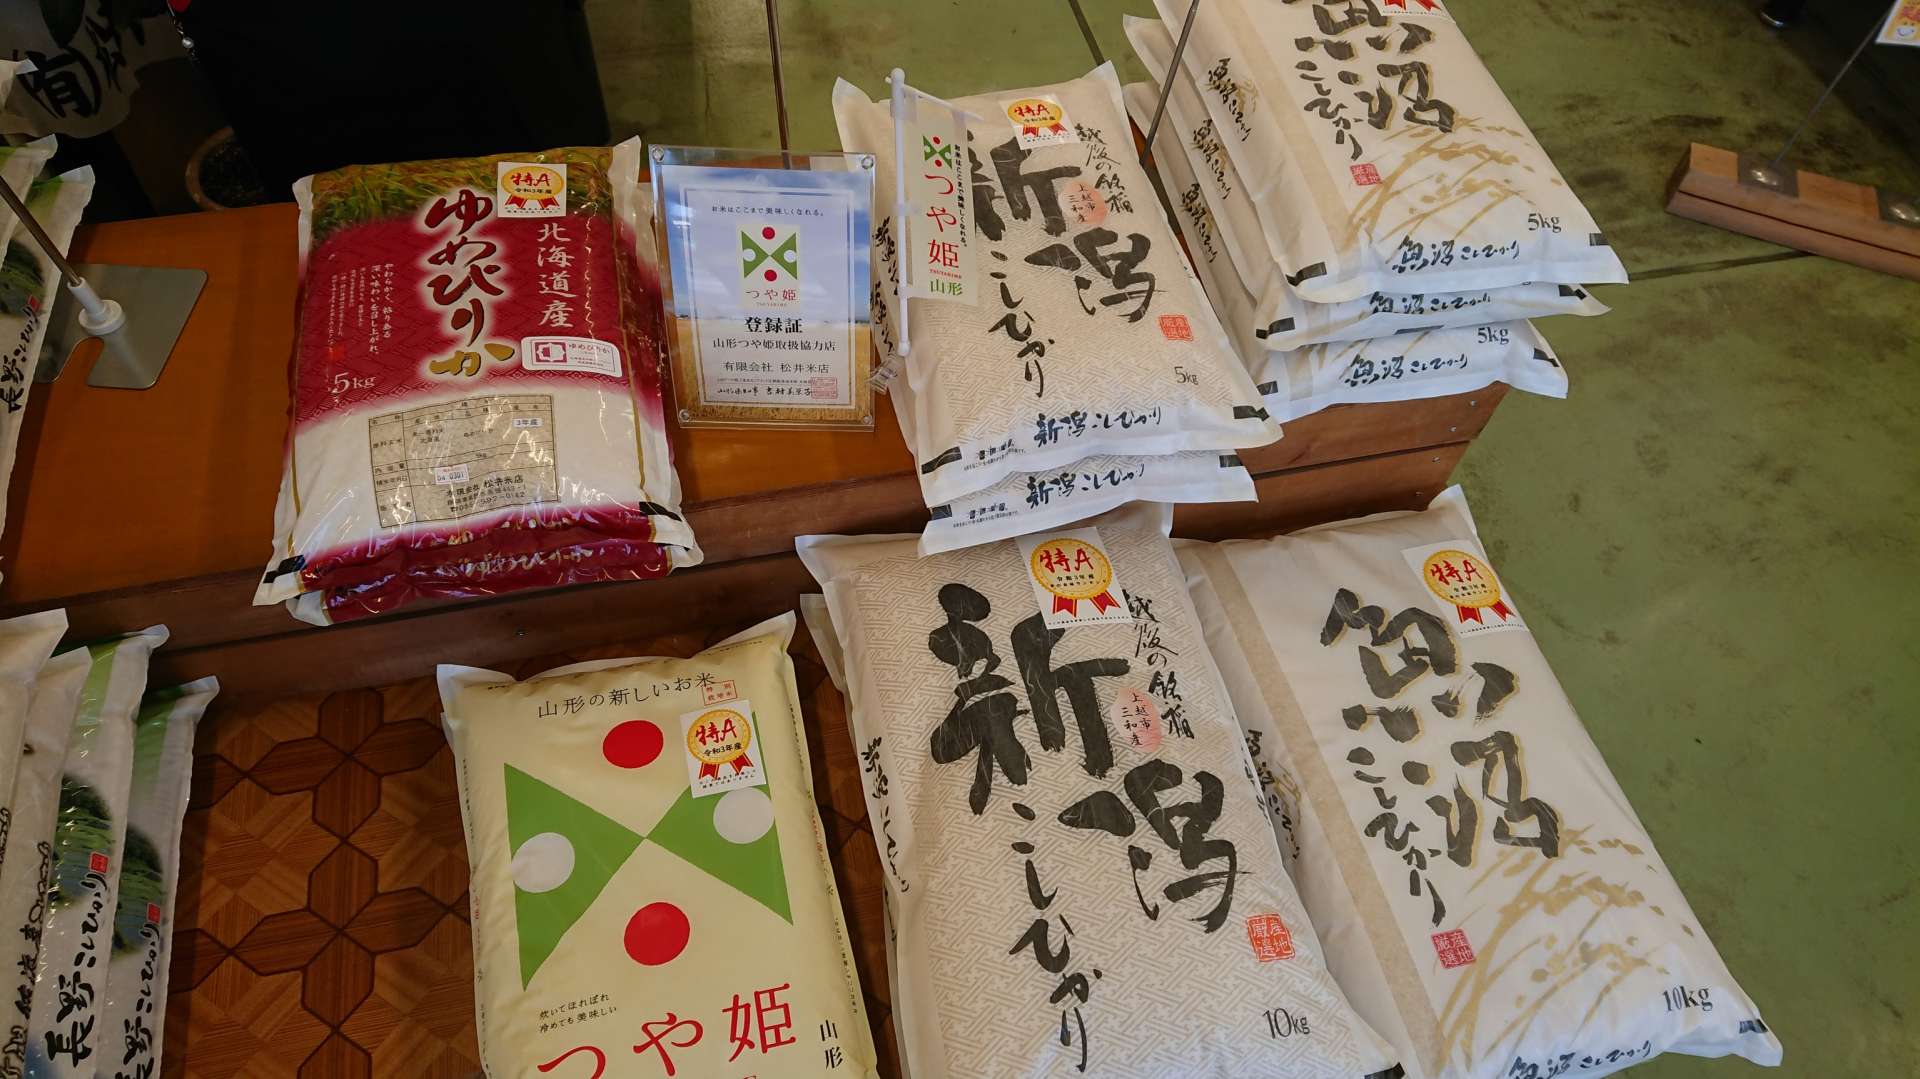 令和3年産米の食味ランキングが発表されました